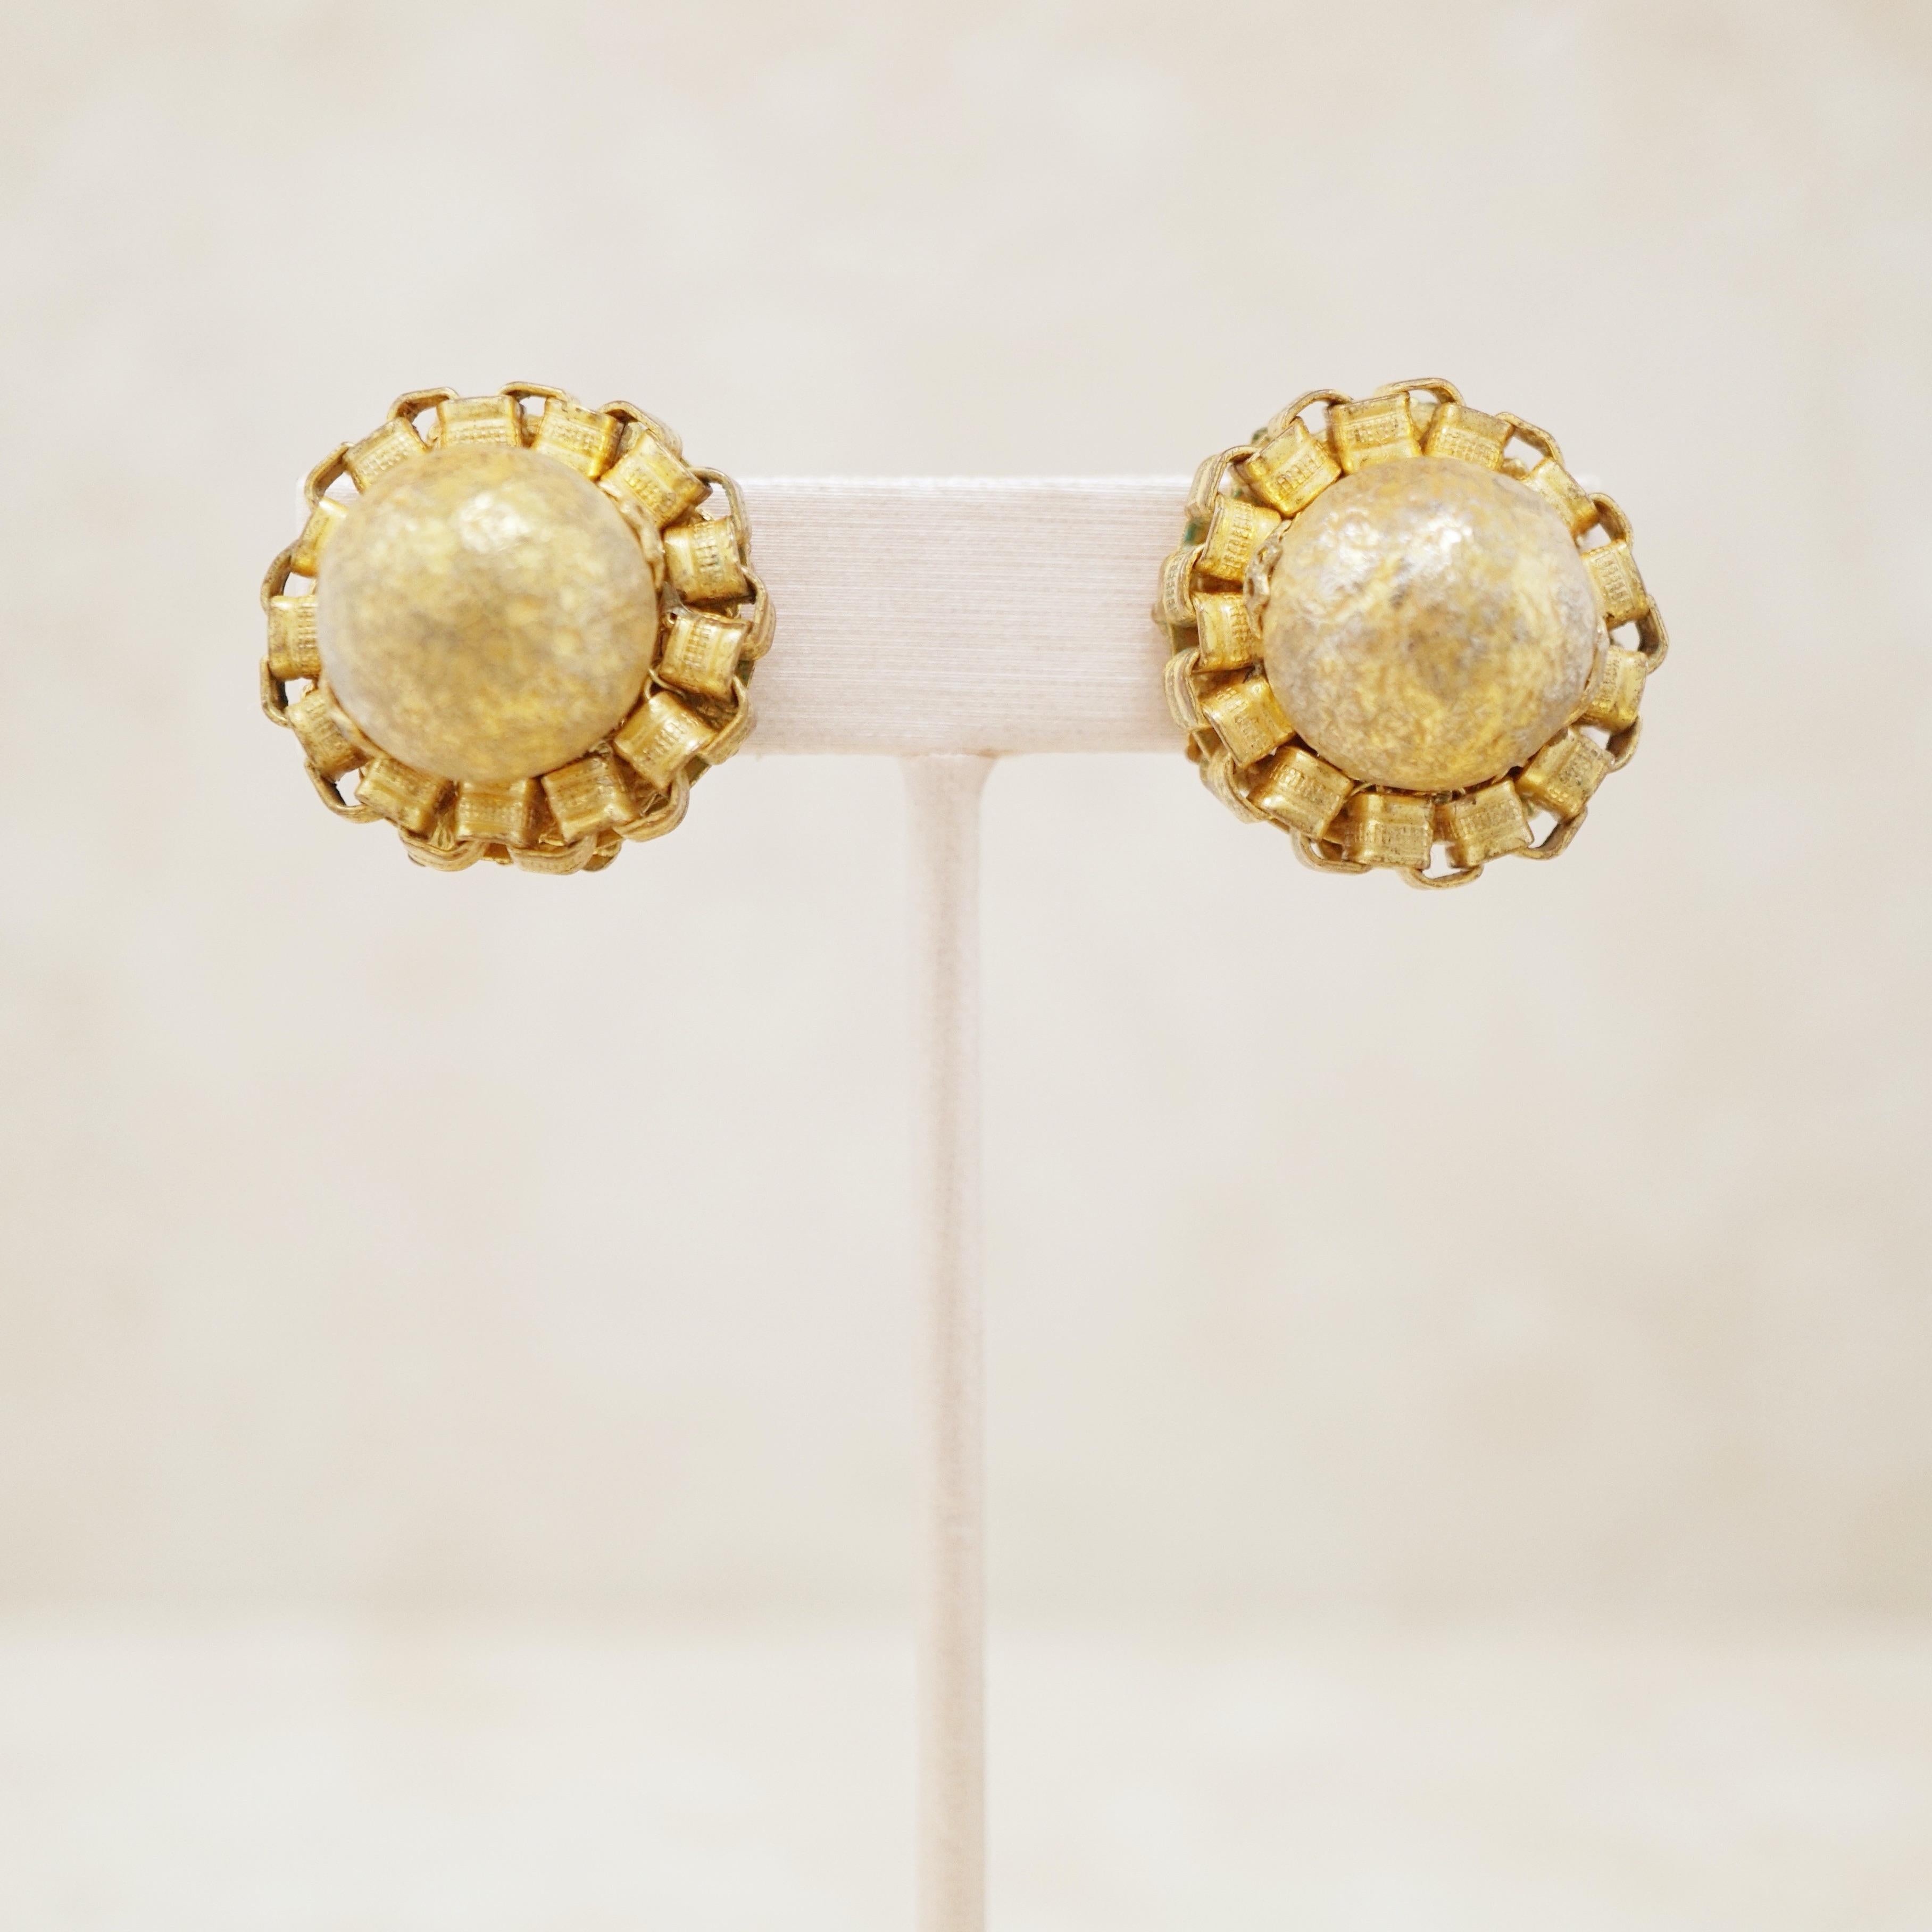 - Vintage item

- Each earring measures 1